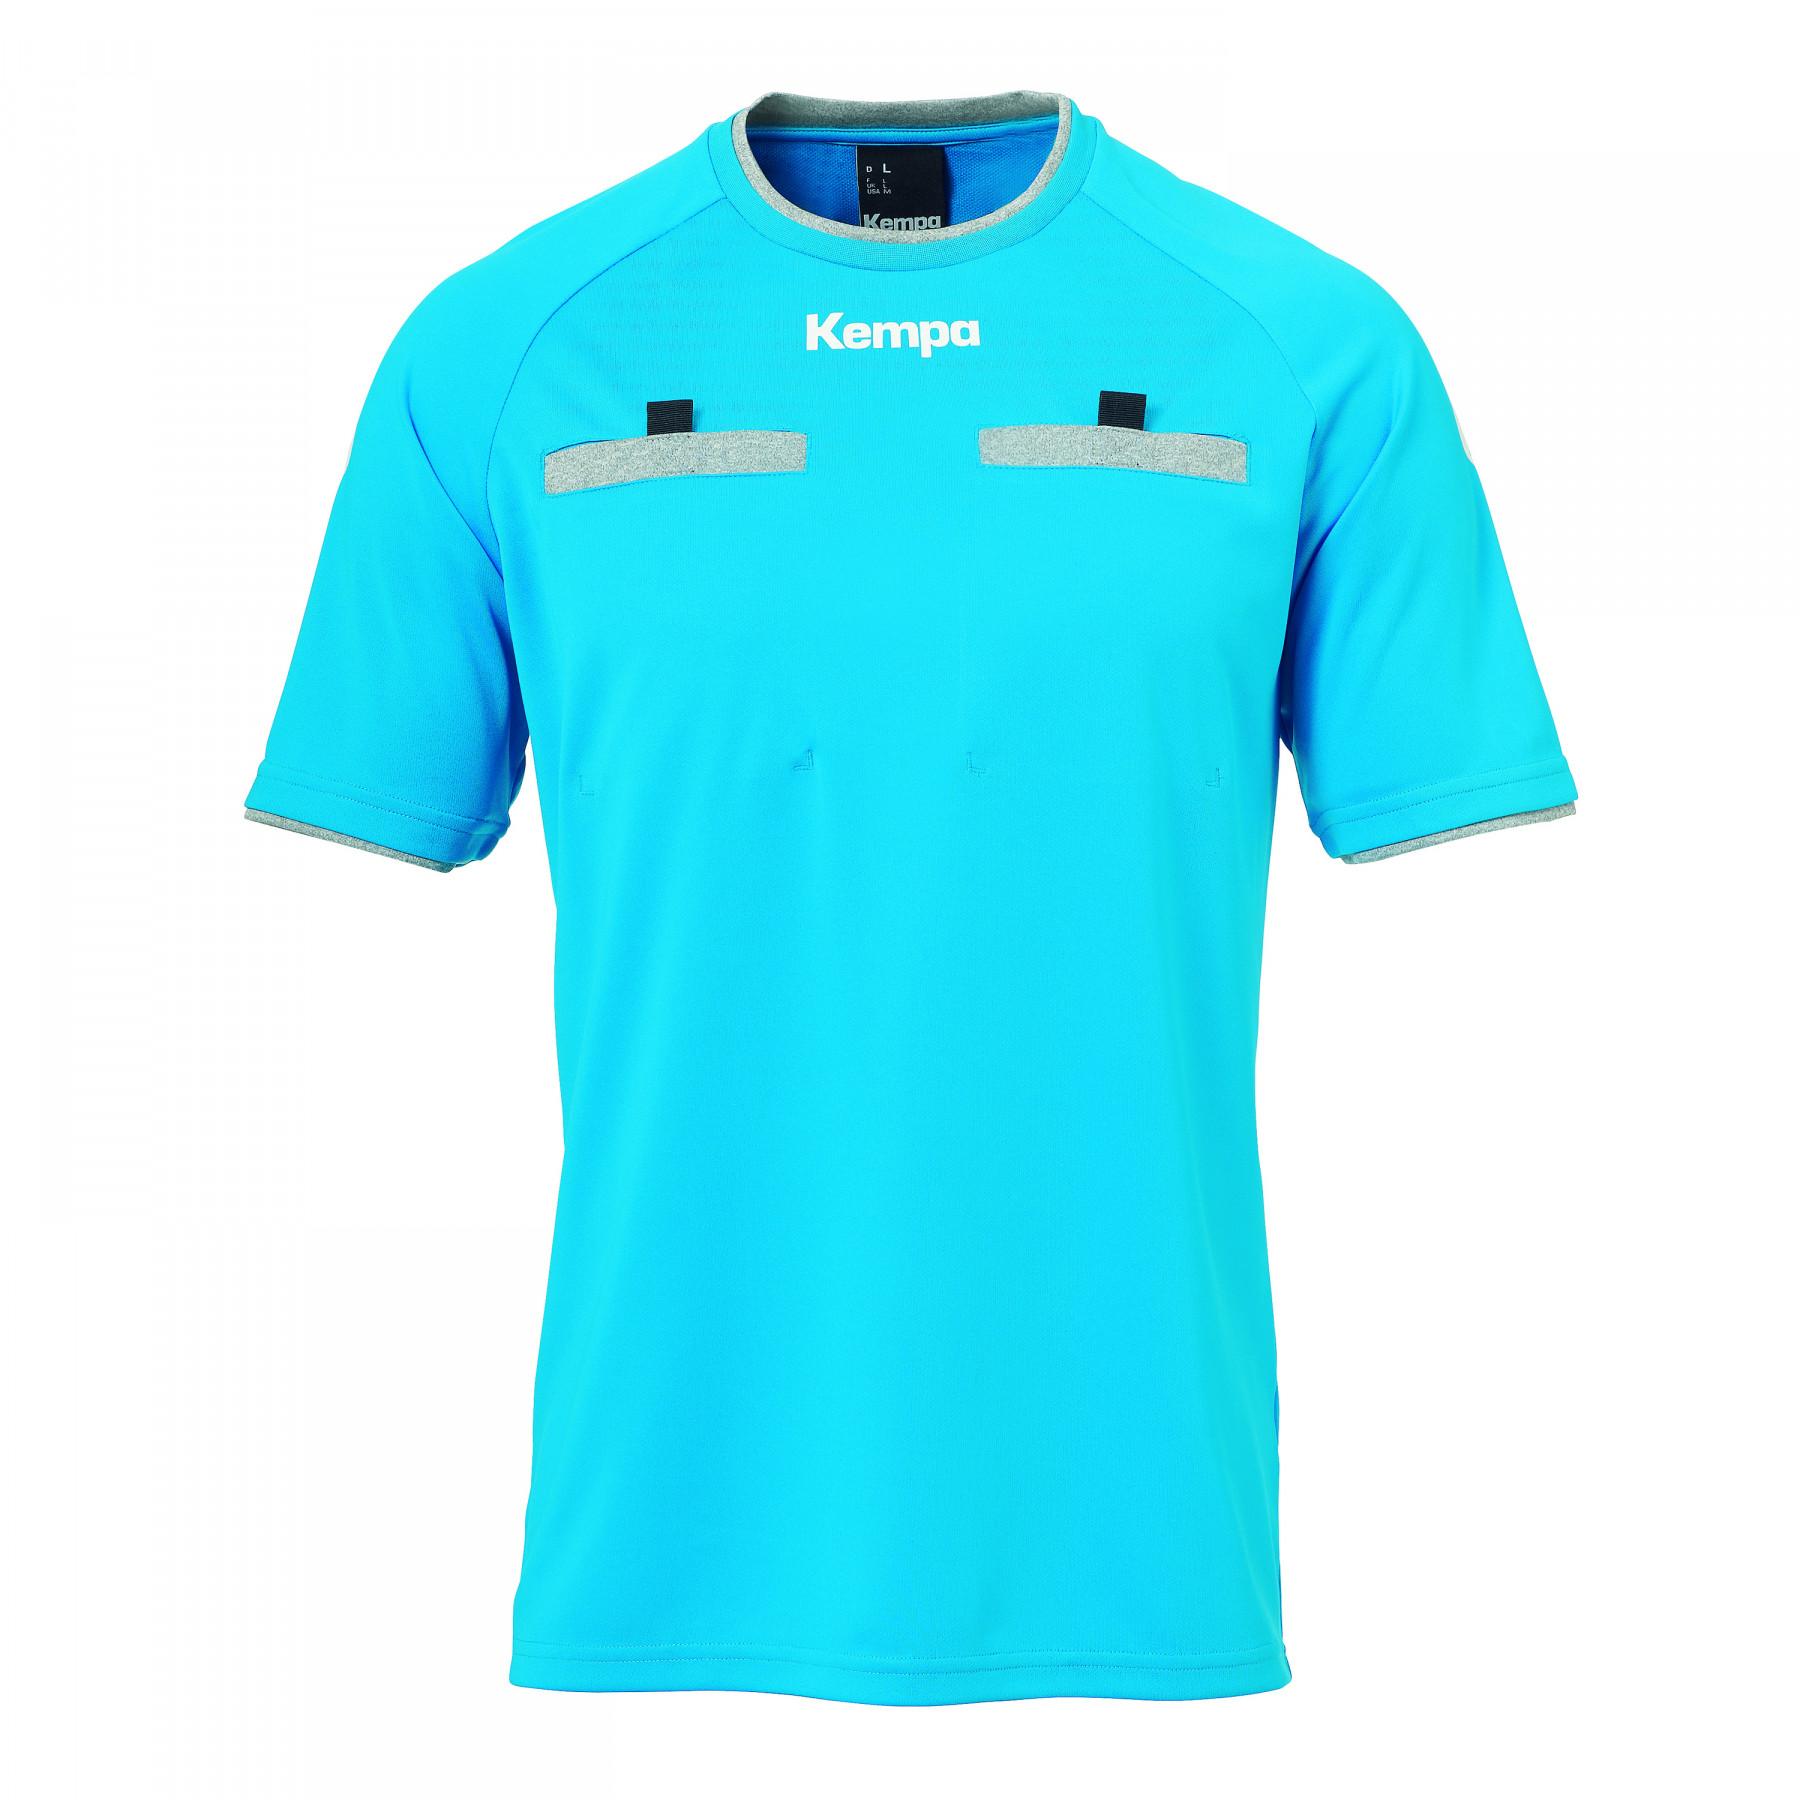 Kempa Mens Team T-shirt 